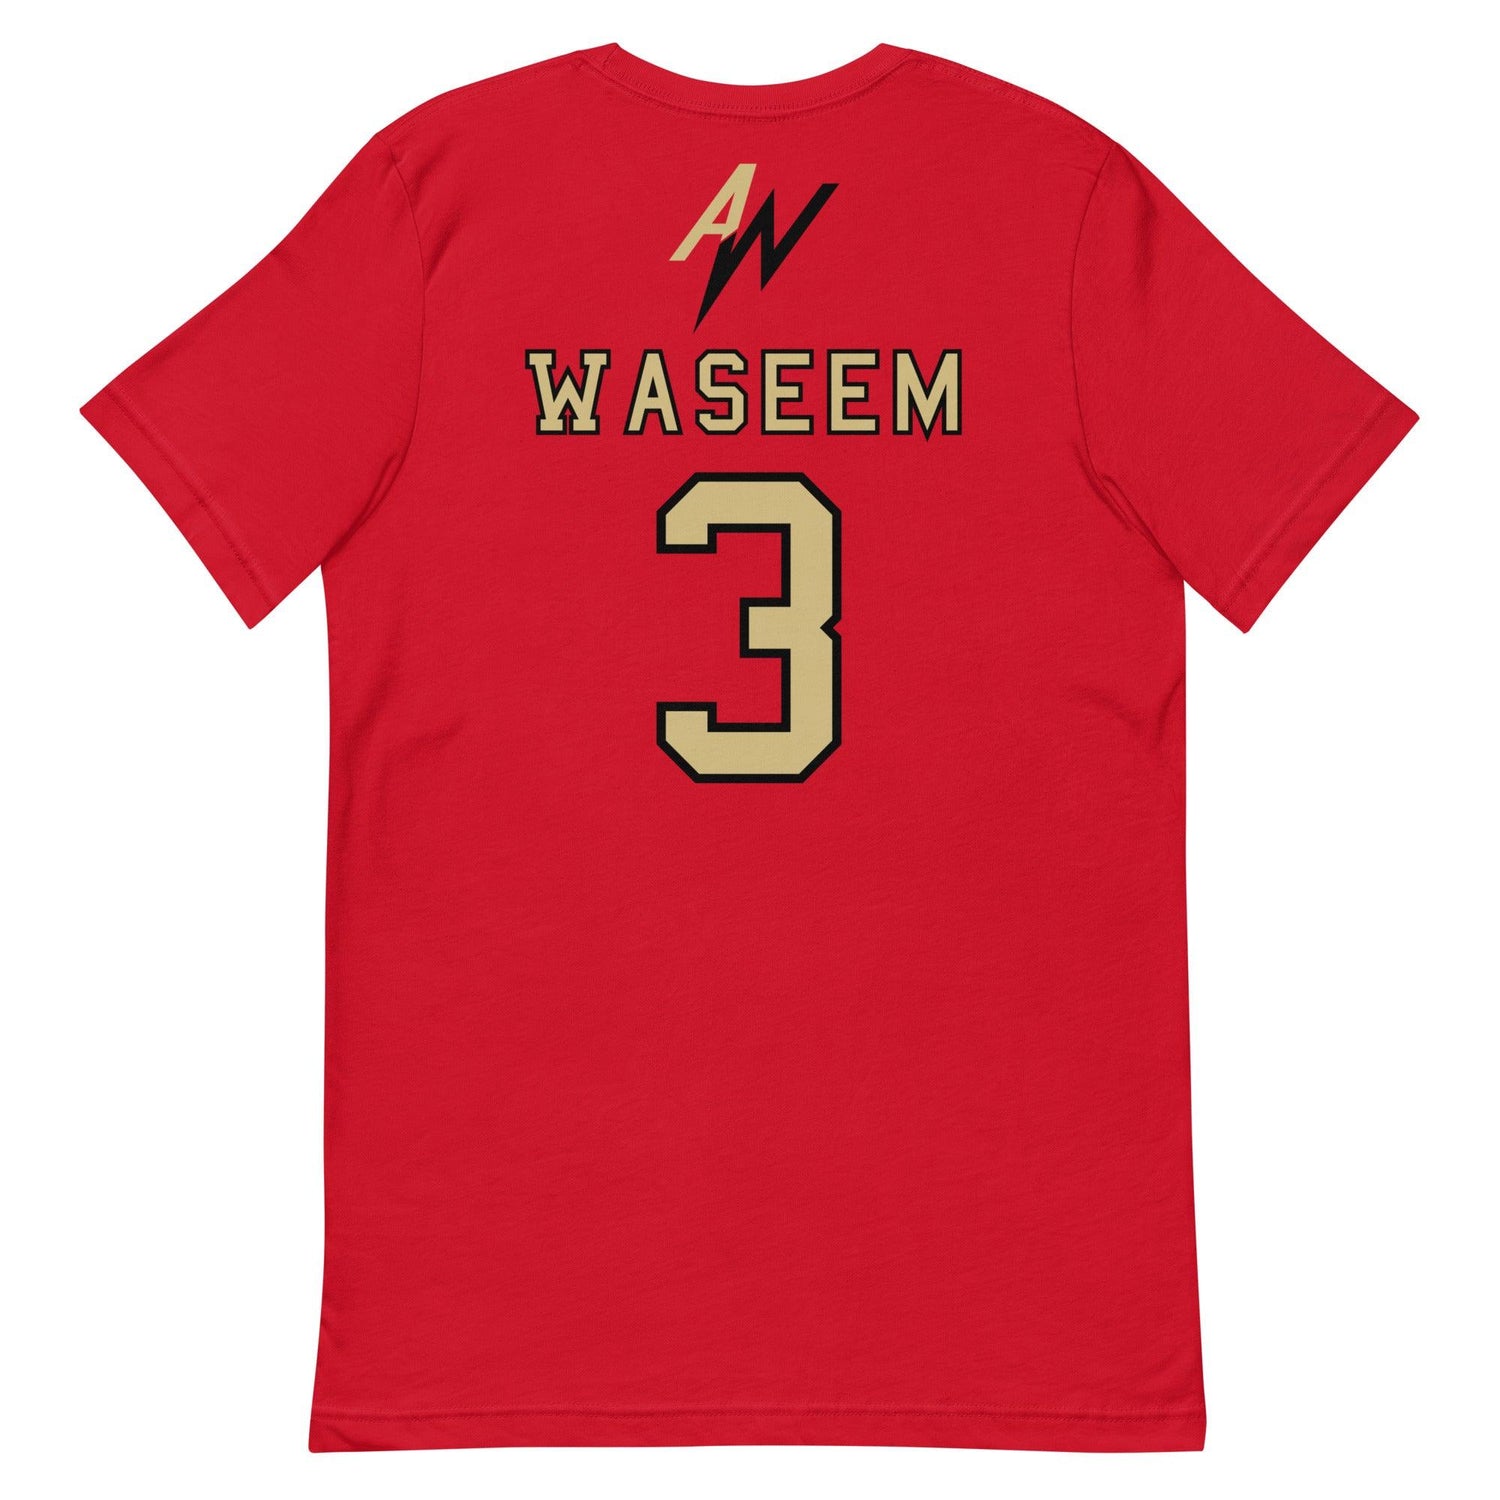 Asaad Waseem "Jersey" t-shirt - Fan Arch